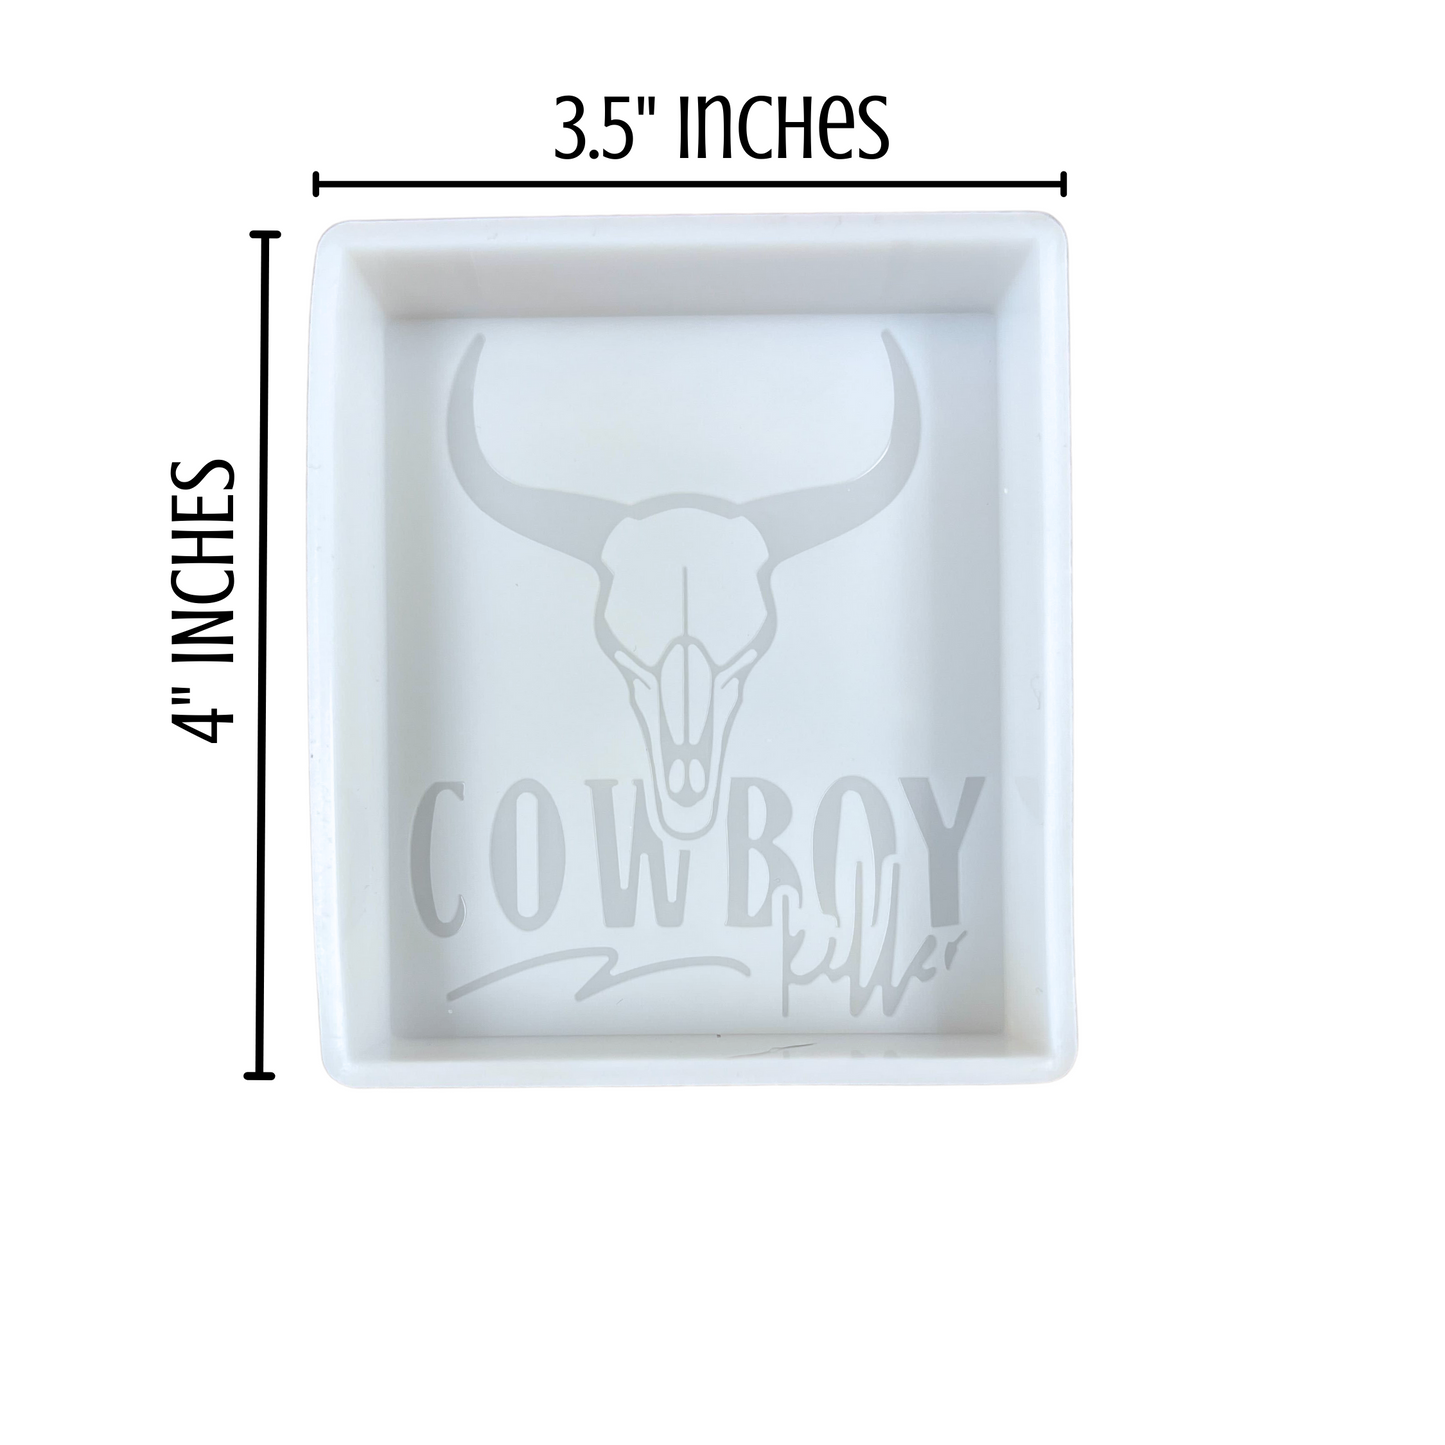 Cowboy Killer Cigarette Box  Silicone Mold